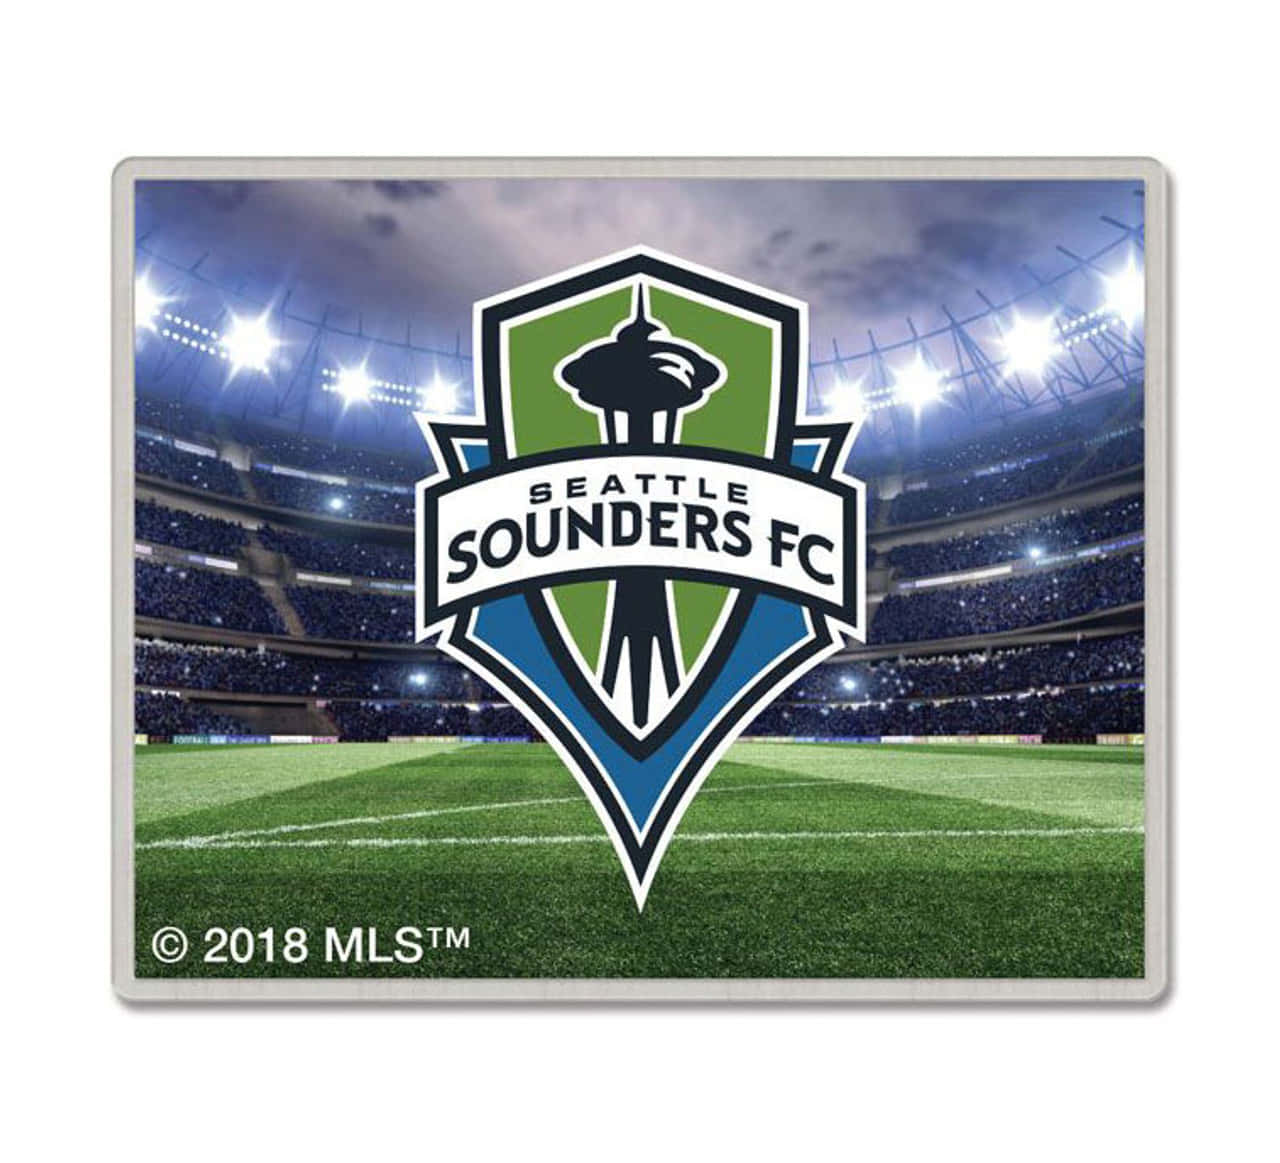 Seattlesounders Fc Professioneller Fußballverein Wallpaper